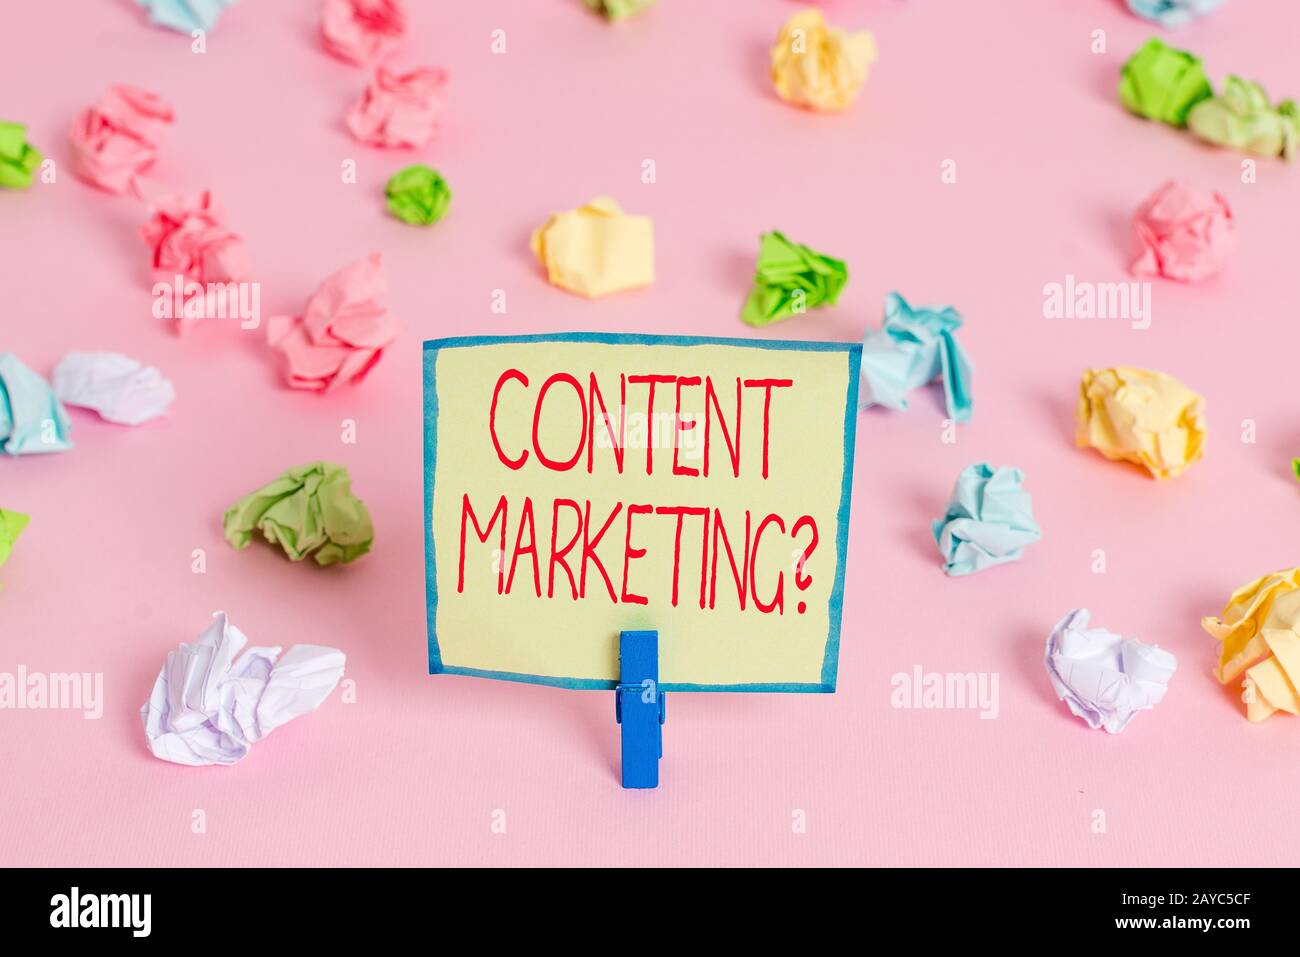 Textzeichen mit der Frage zum Content-Marketing. Konzeptionelles Foto beinhaltet die Erstellung und den Austausch von Online-Material, das zerknittert eingefärbt ist Stockfoto